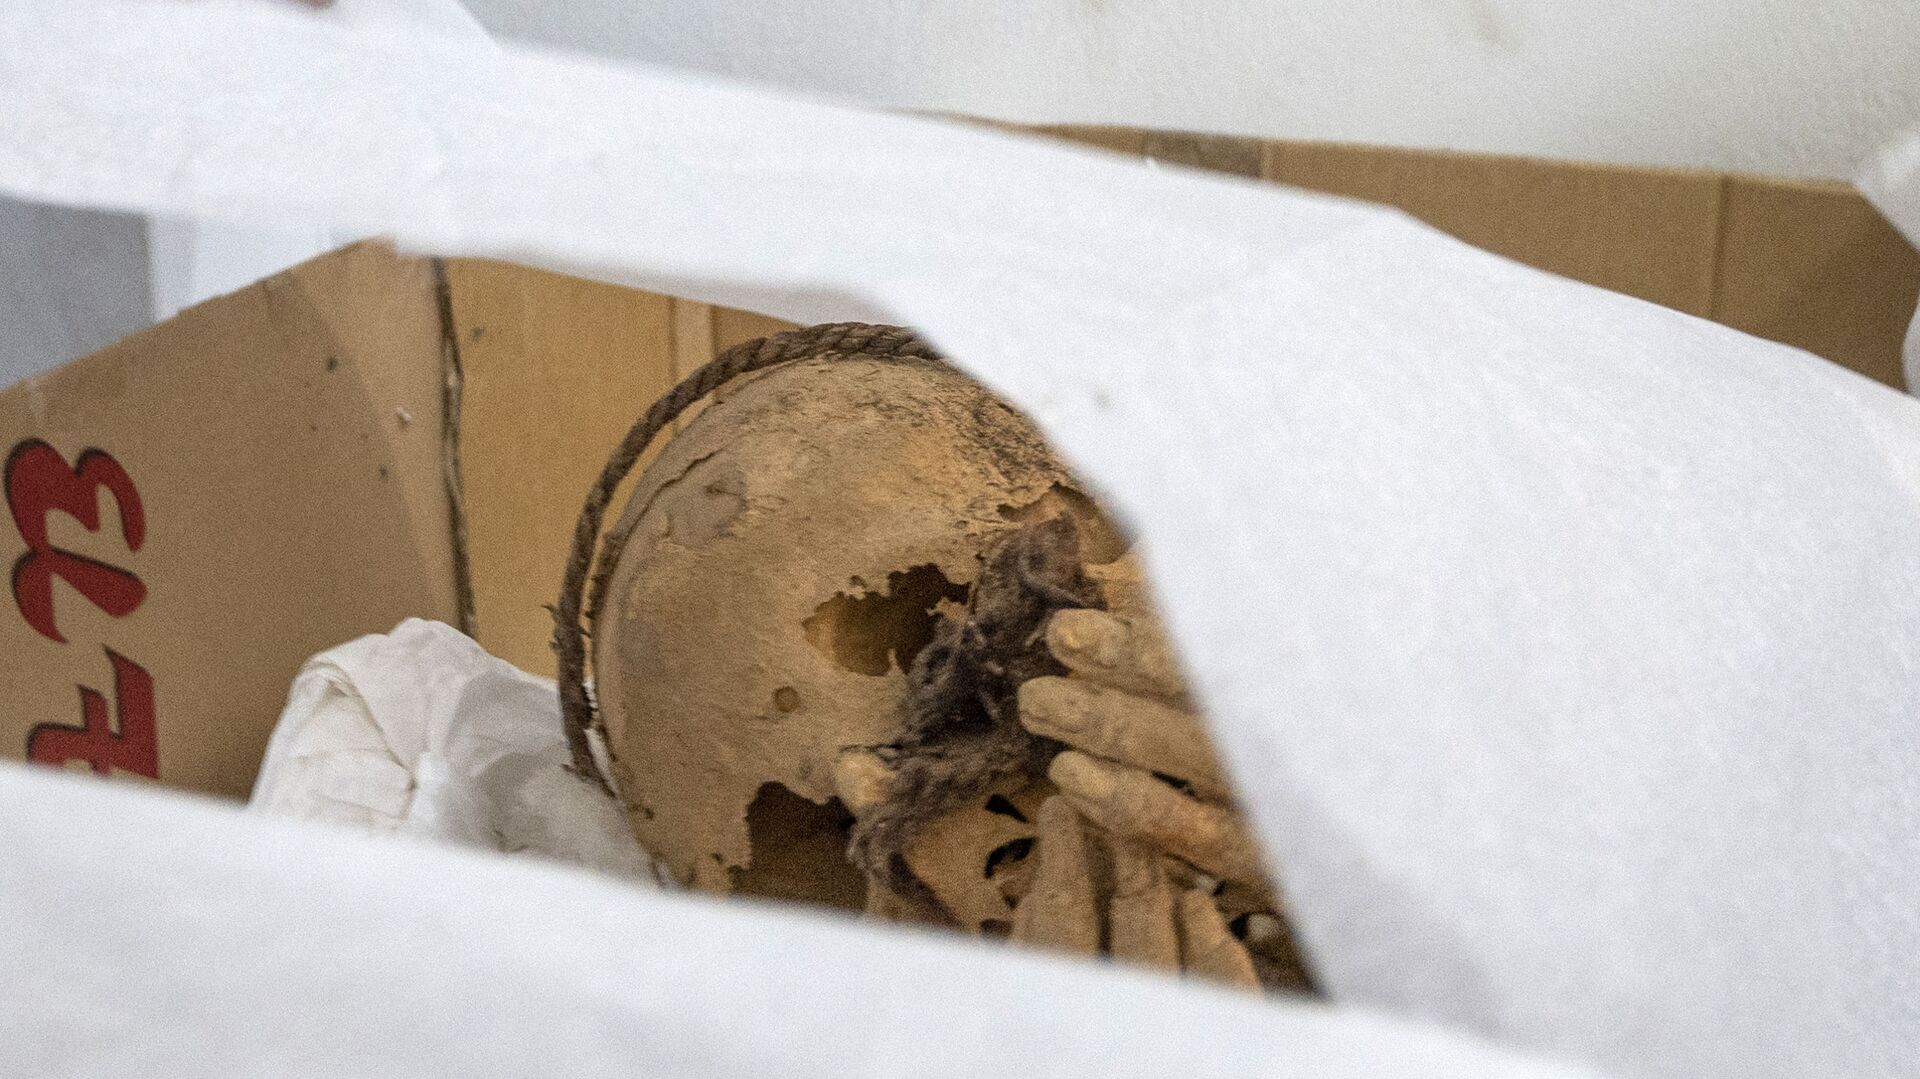 Обнаруженная мумия во время археологических раскопок в Перу  - Sputnik Mundo, 1920, 29.12.2021